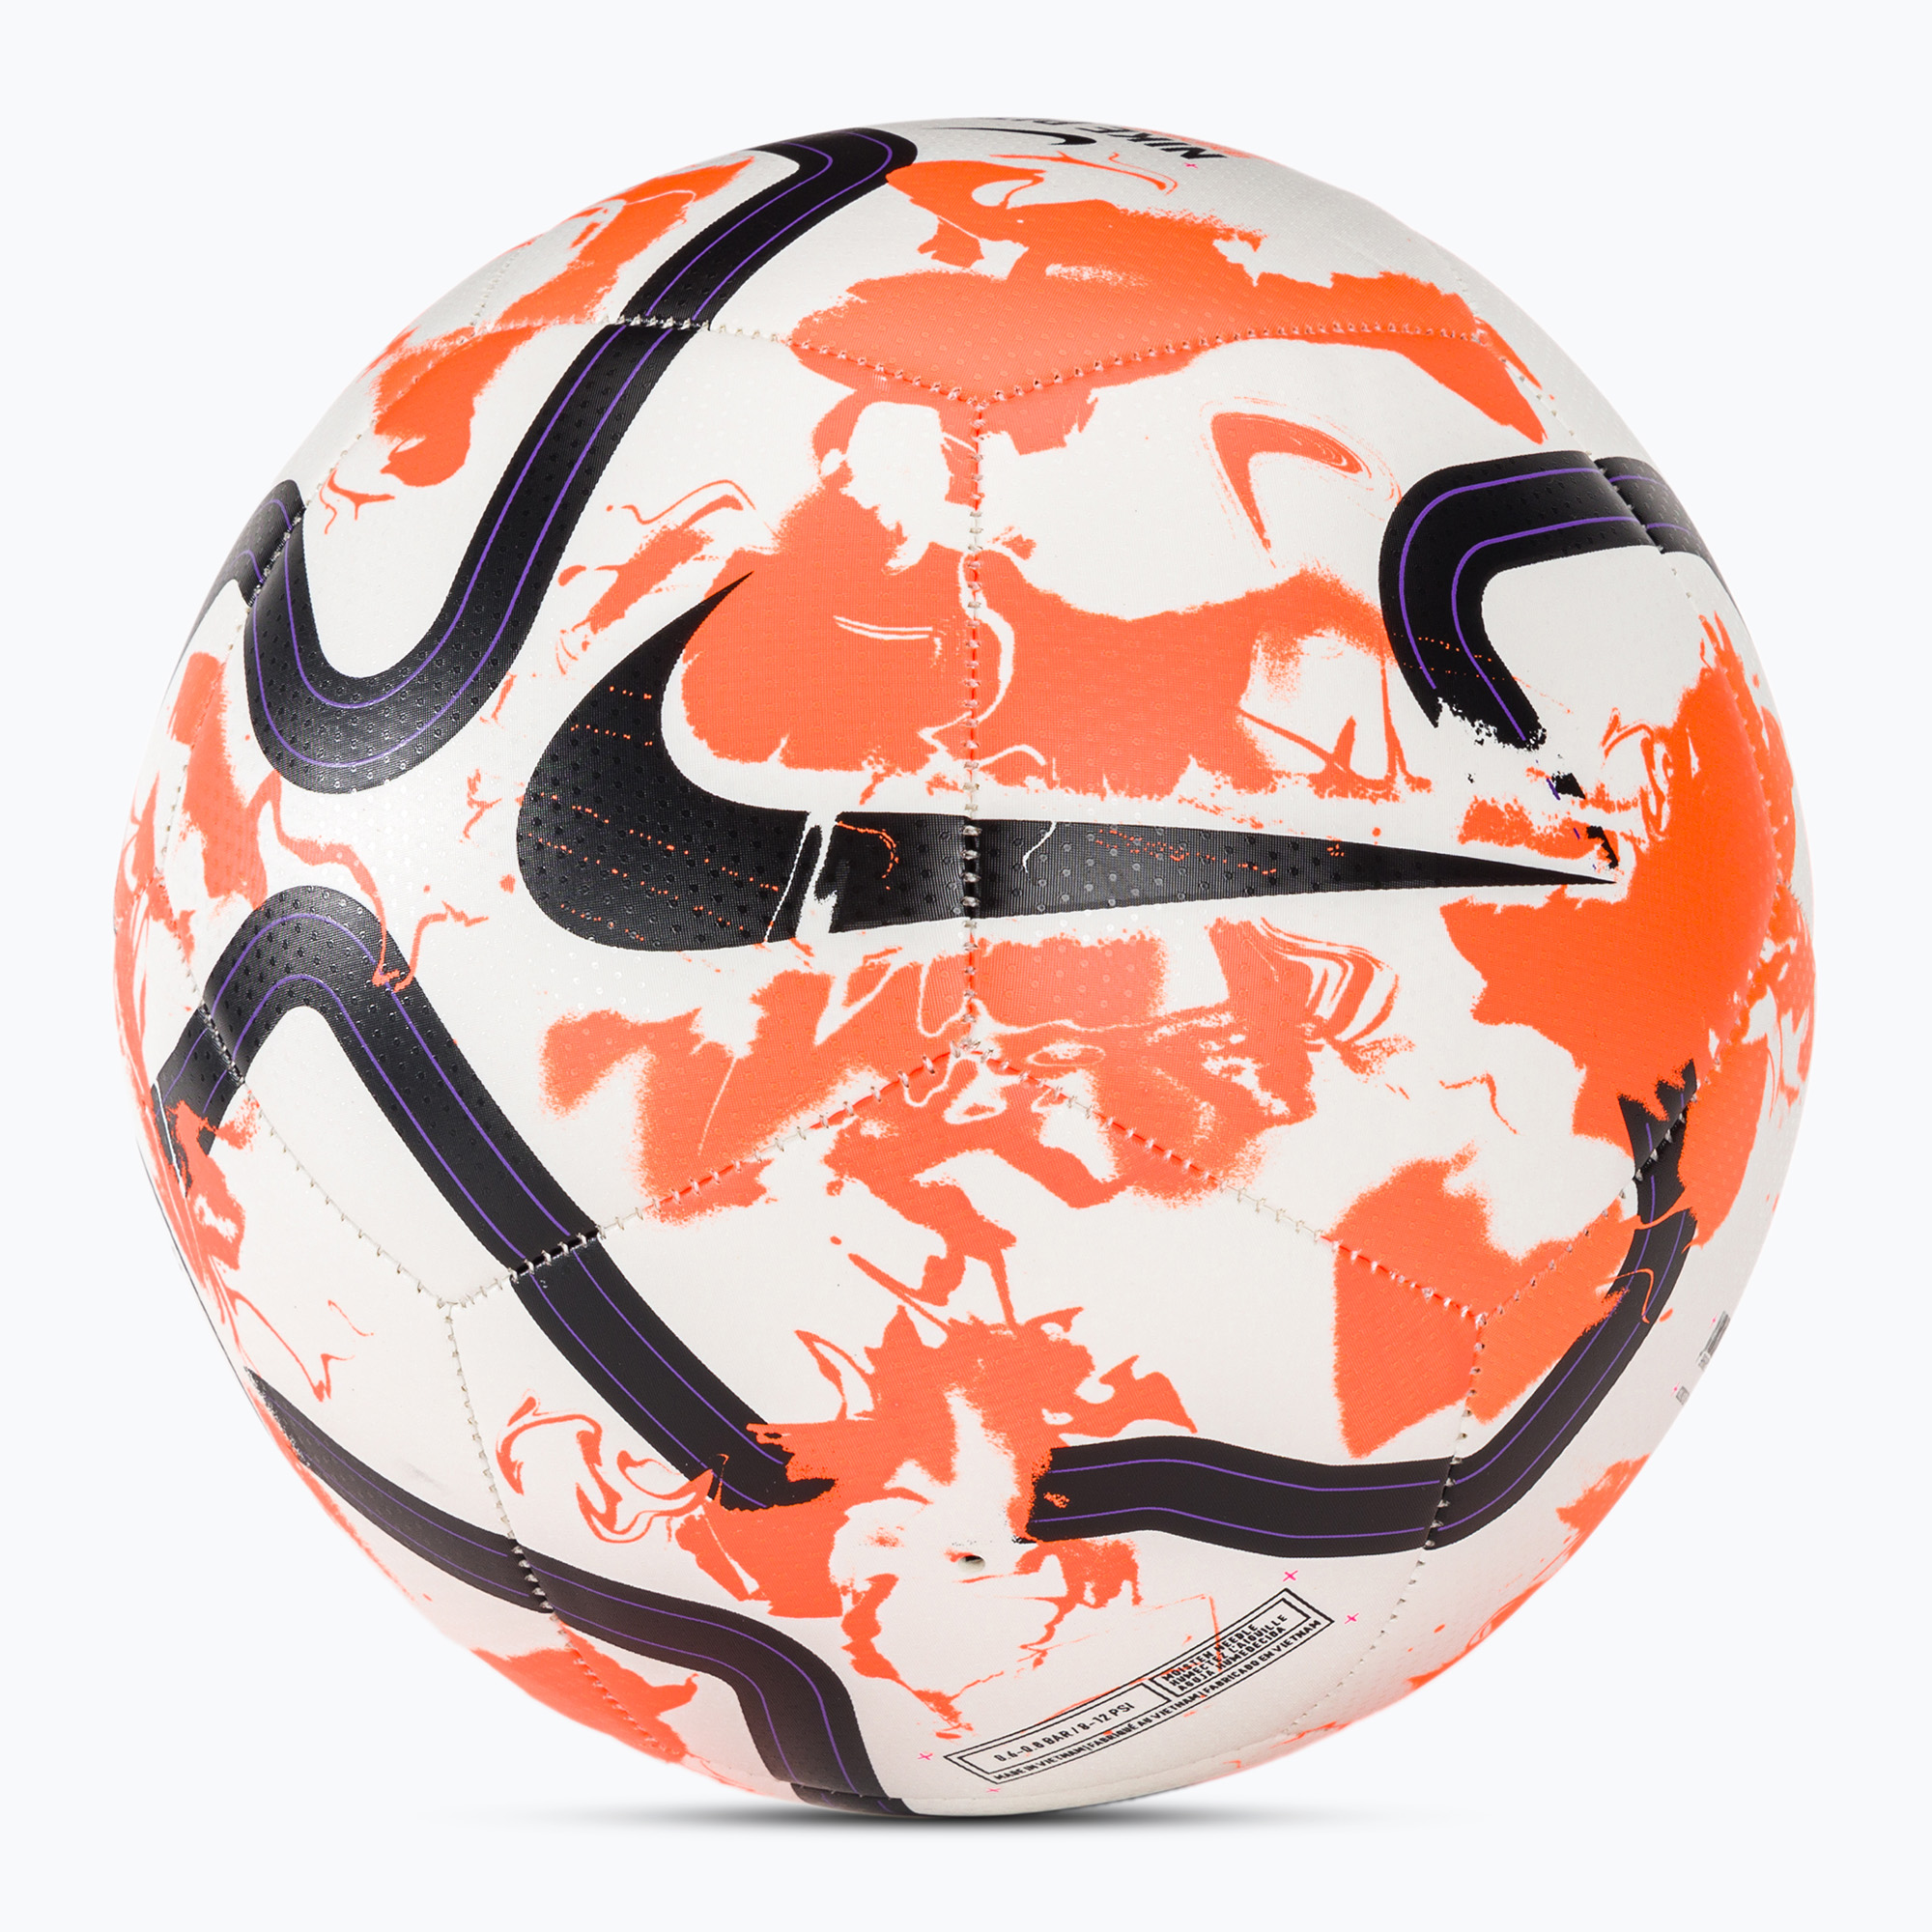 Futbalová lopta Nike Premier League Pitch biela/celkom oranžová/čierna veľkosť 5